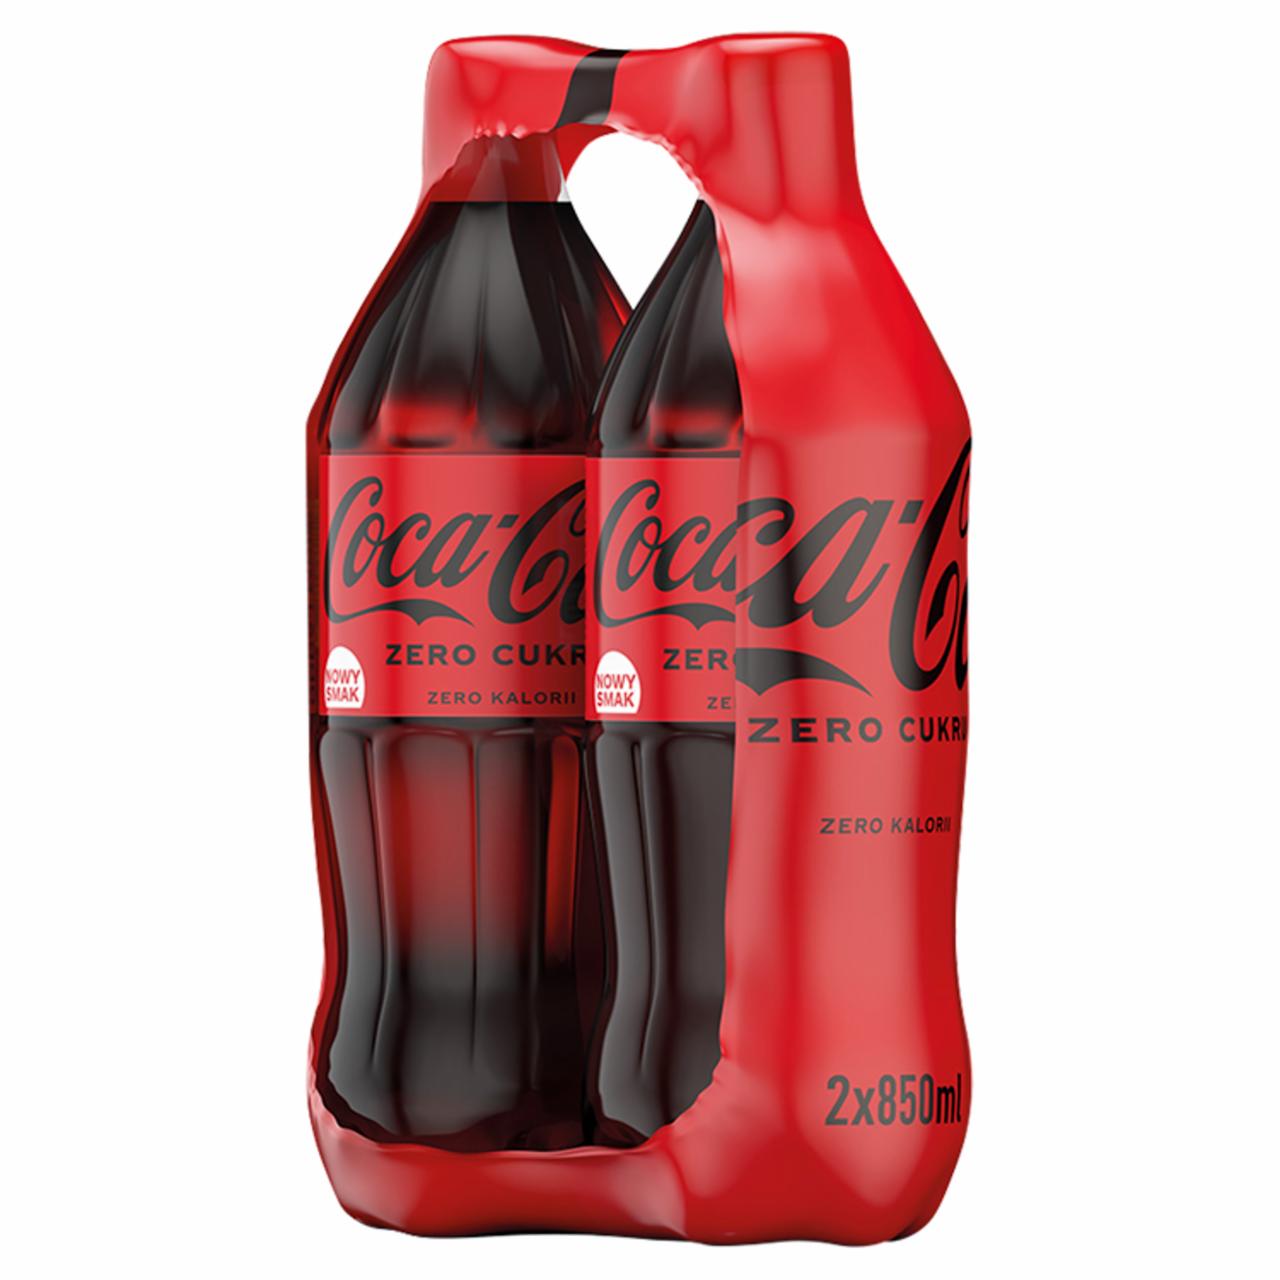 Zdjęcia - Coca-Cola zero Napój gazowany 2 x 850 ml